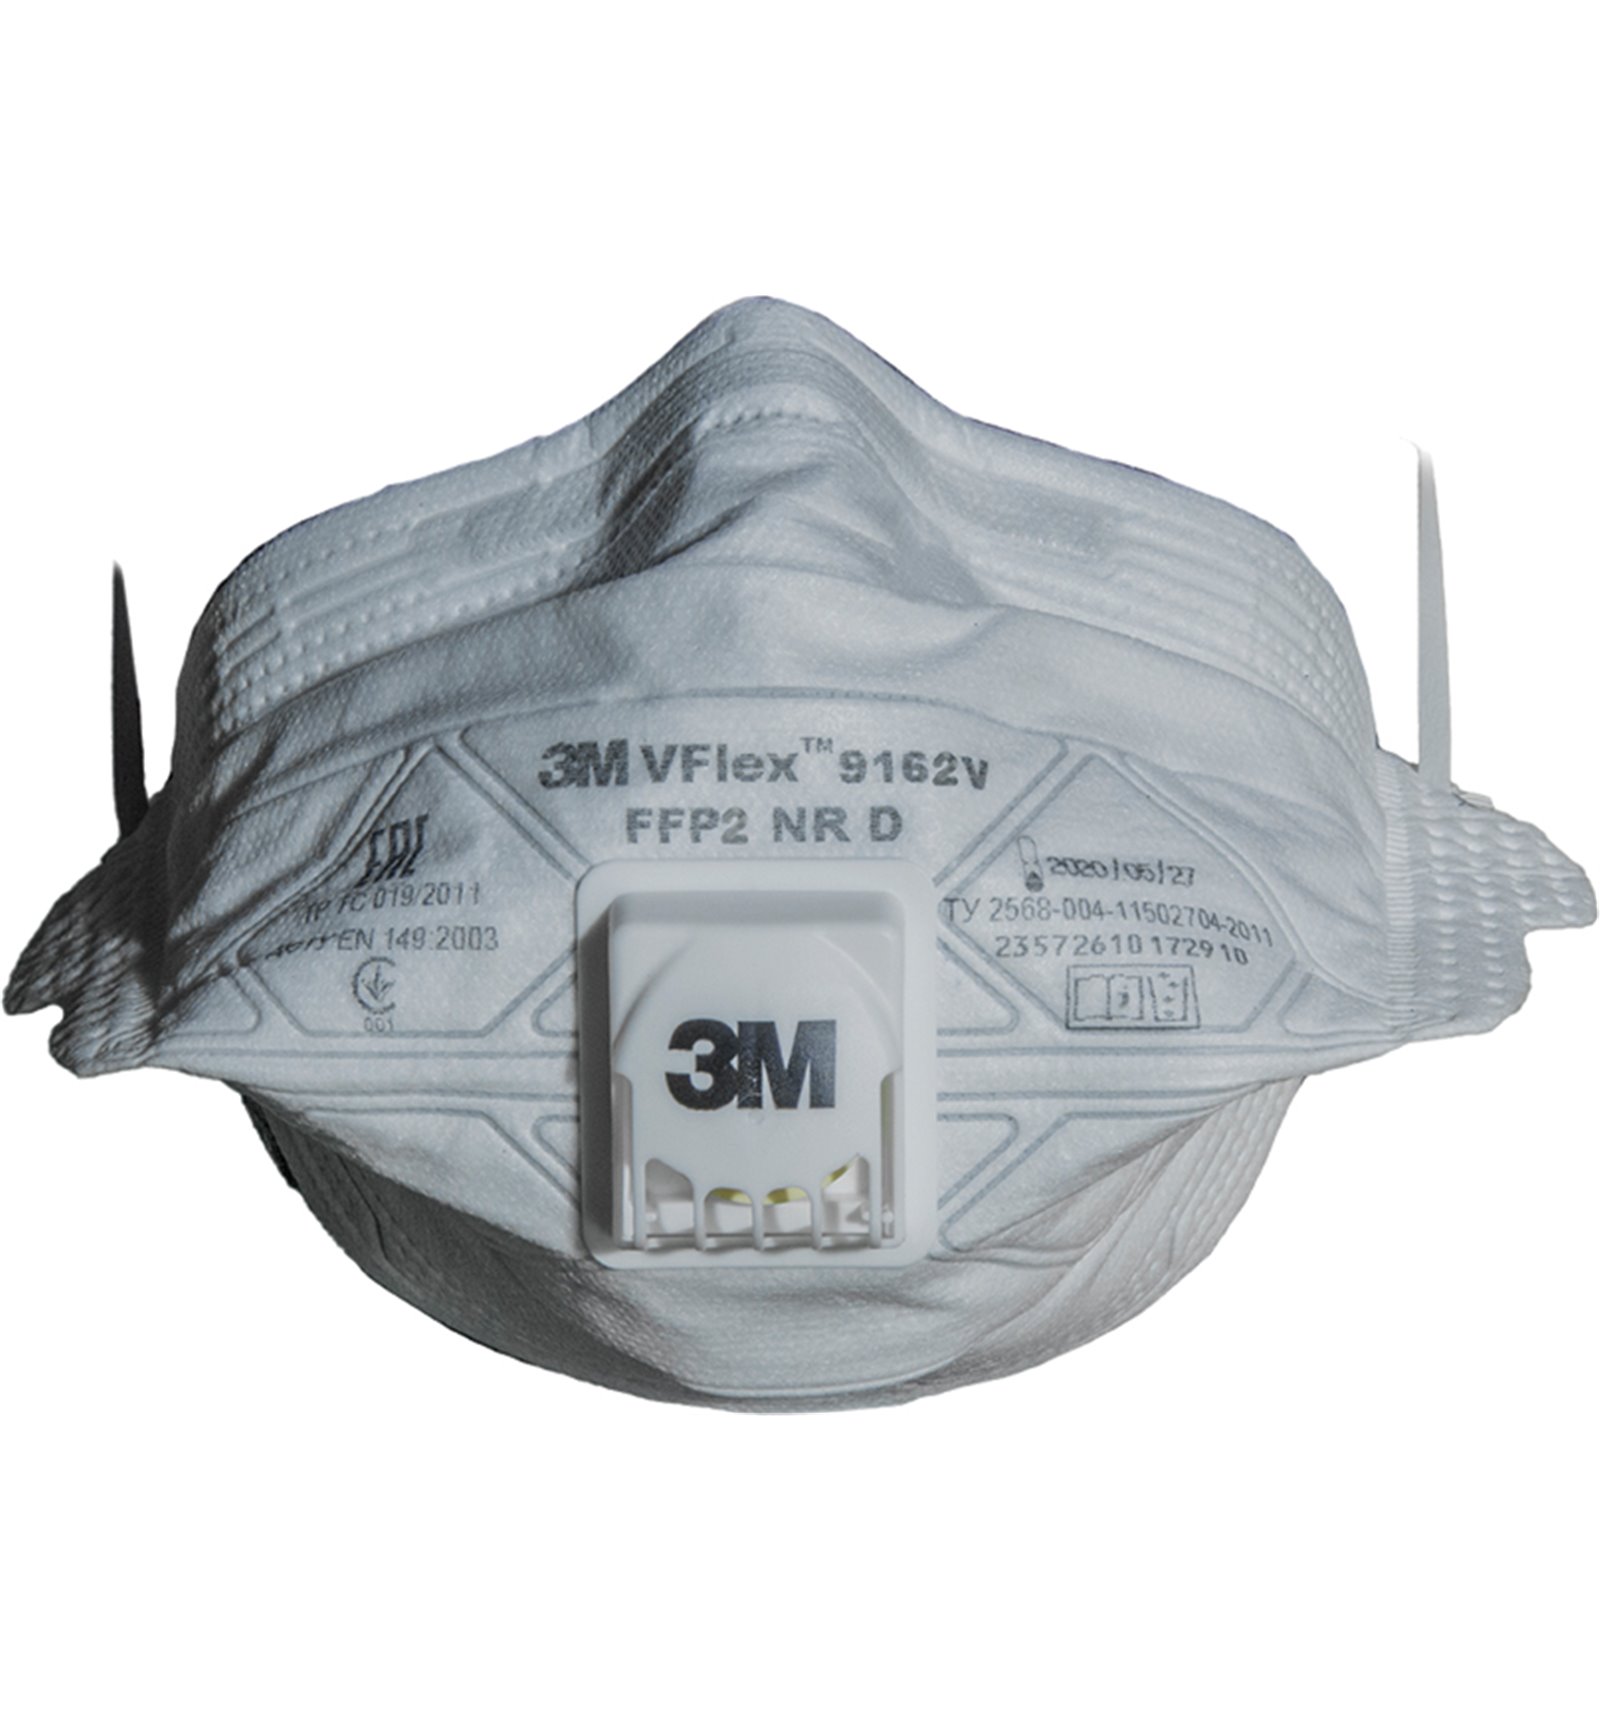 Mascarilla FFP3 3M 9332 para protección respiratoria